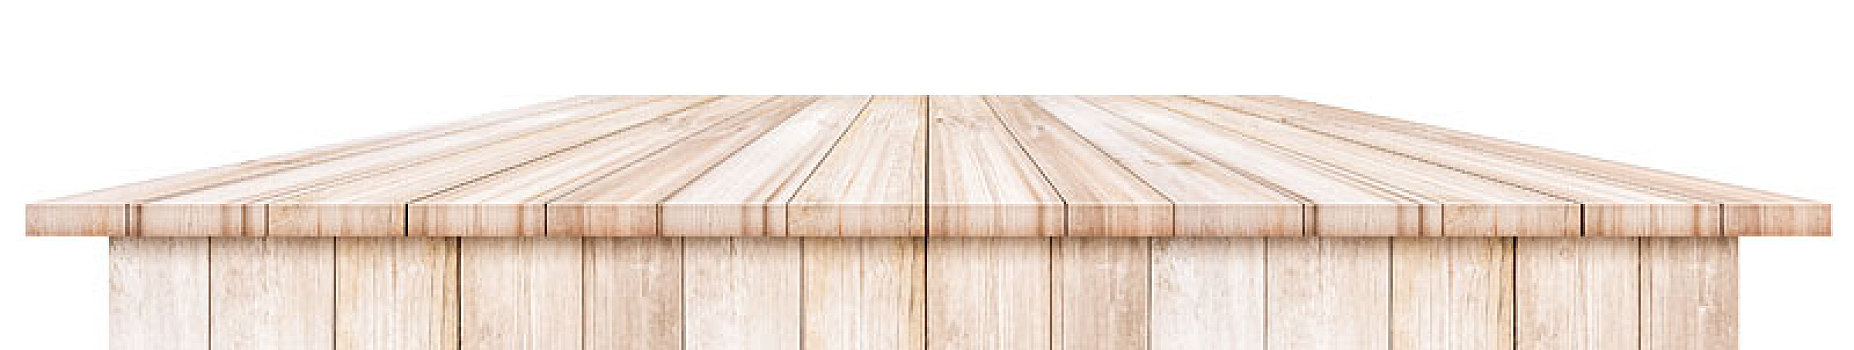 木桌子,上面,隔绝,白色背景,背景